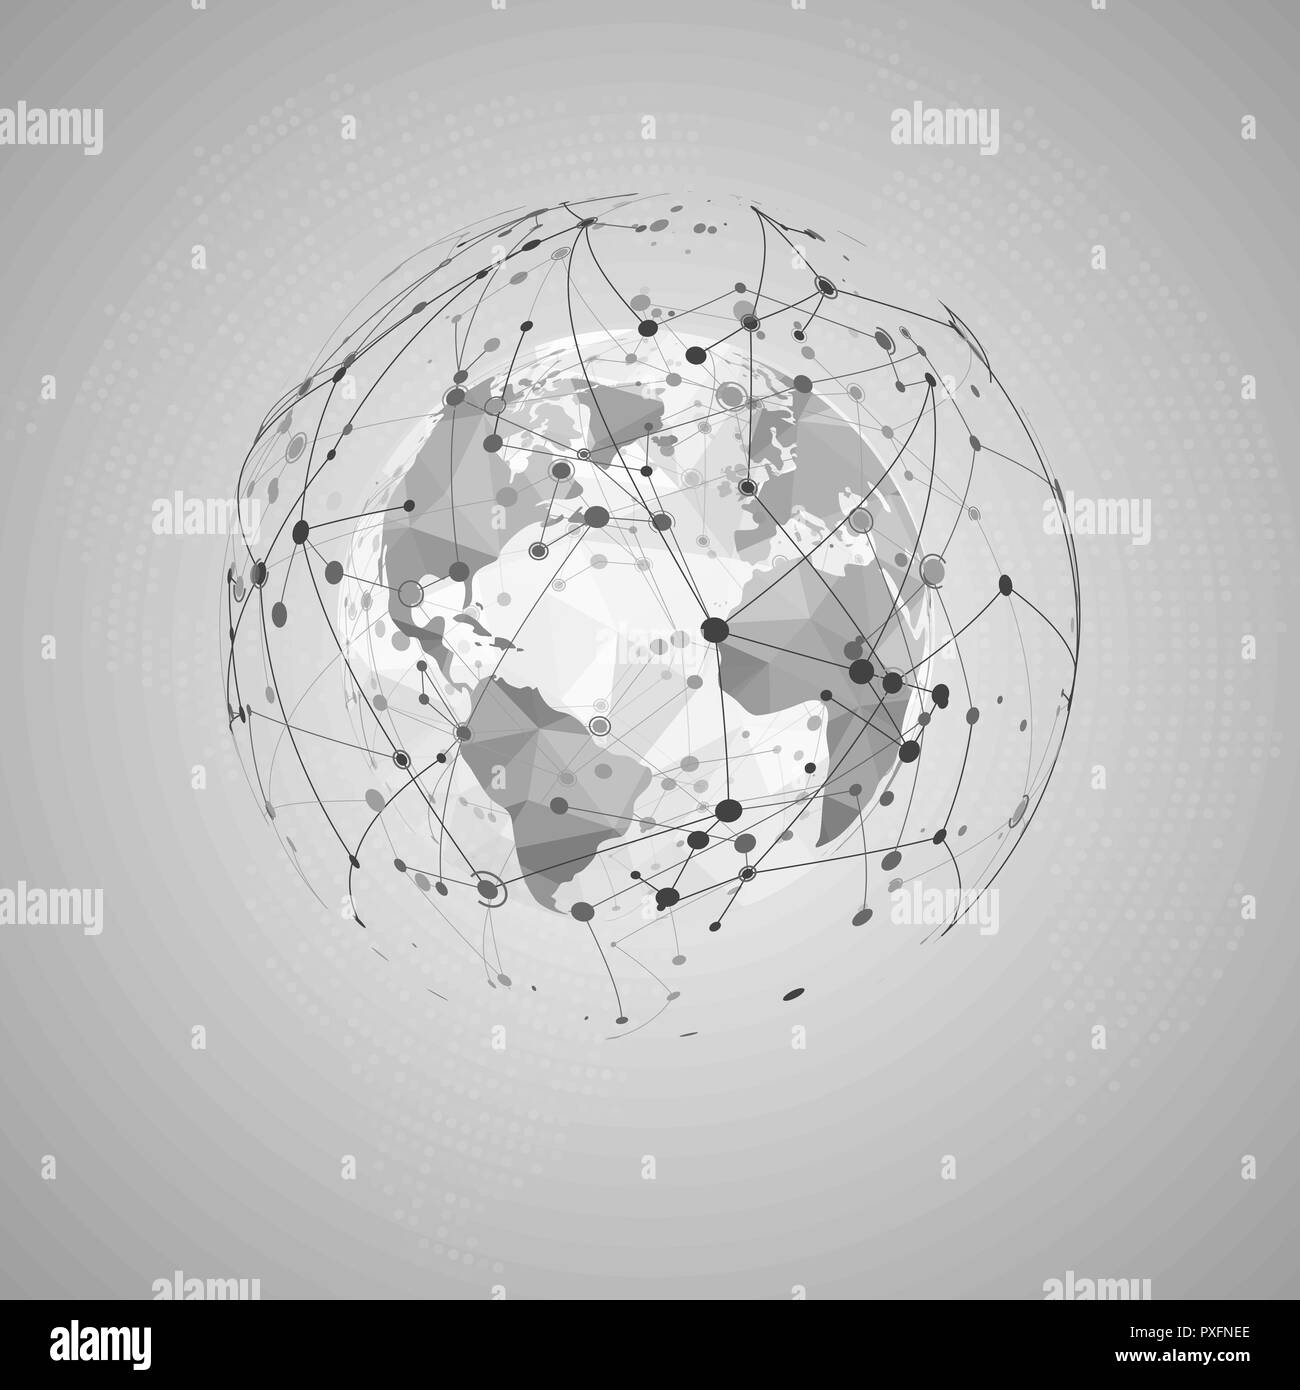 Abstrakte Internet Konzept. Welt polygonalen Karte und Visualisierung Plexus Netzwerk Struktur. Vector Illustration Stock Vektor